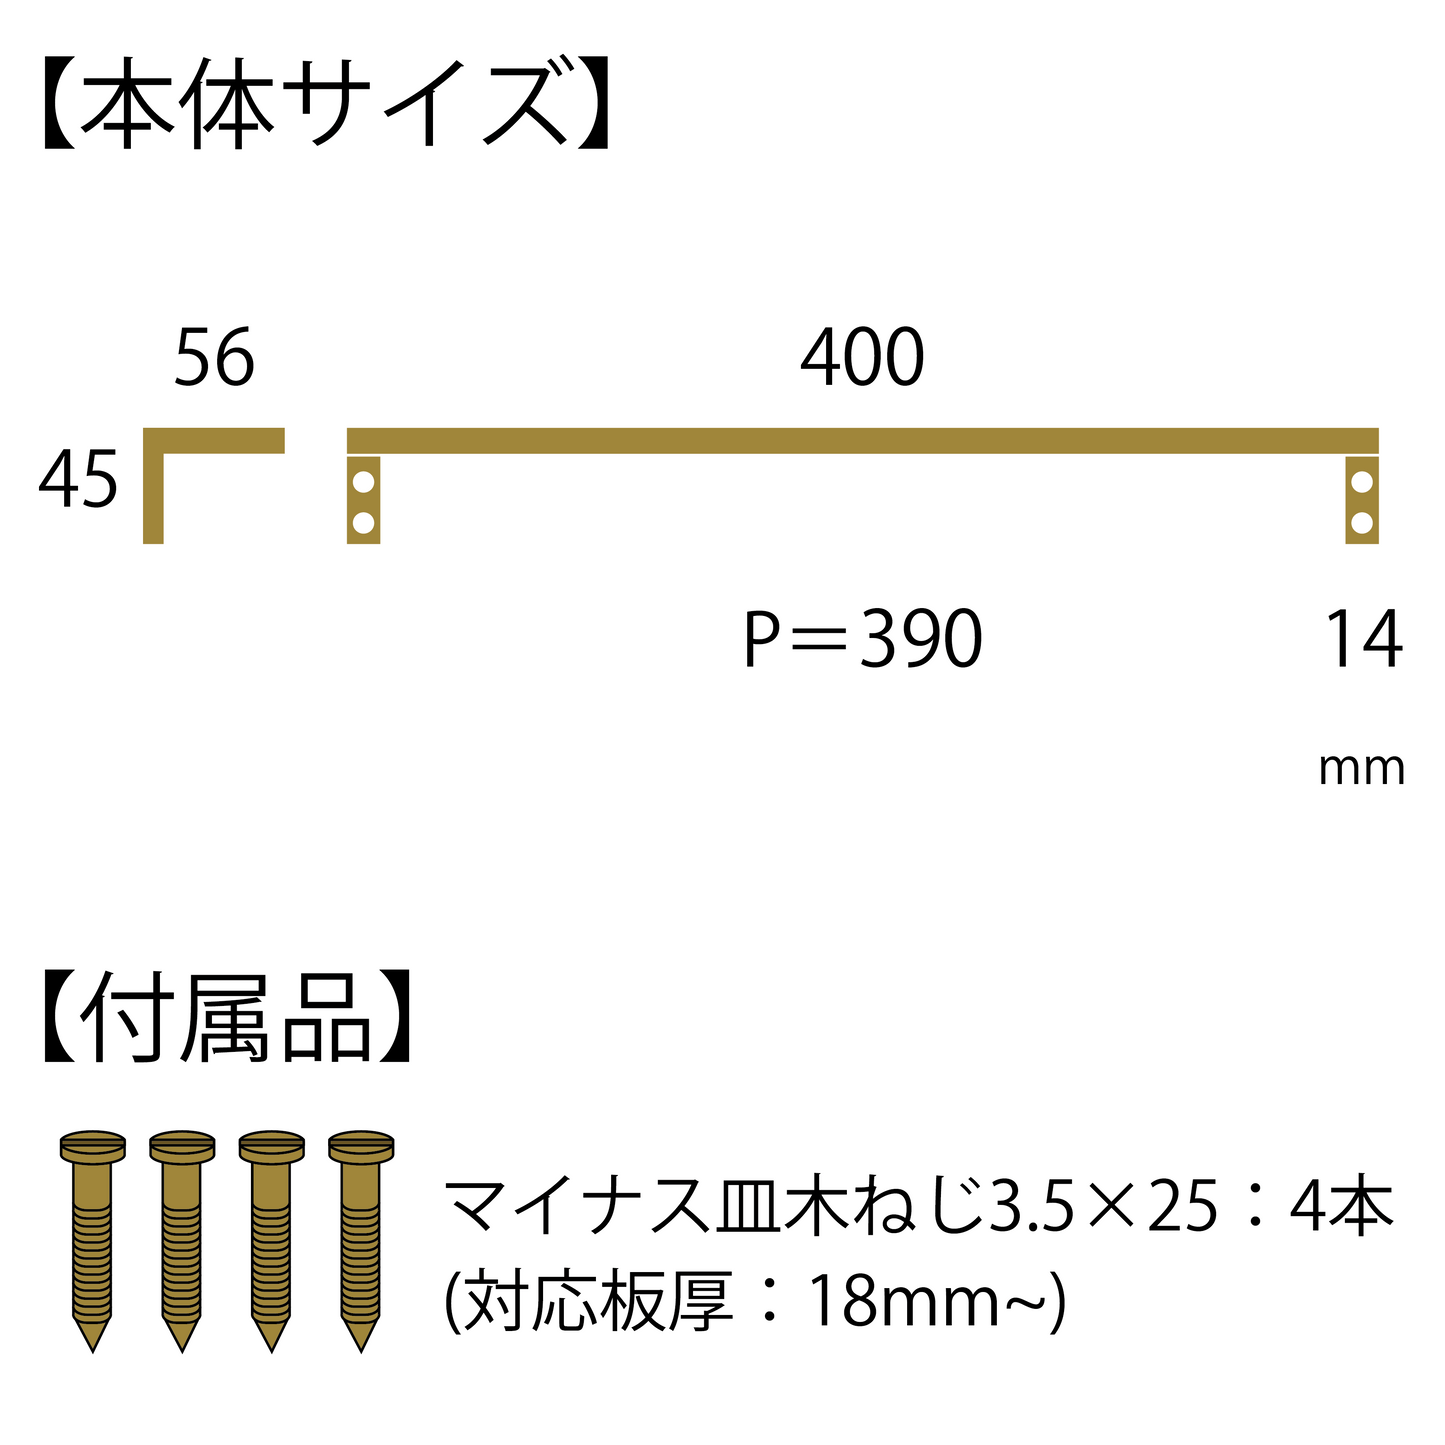 Brass Casting 真鍮鋳物 タオル掛け (L型 黒染め BT-201)